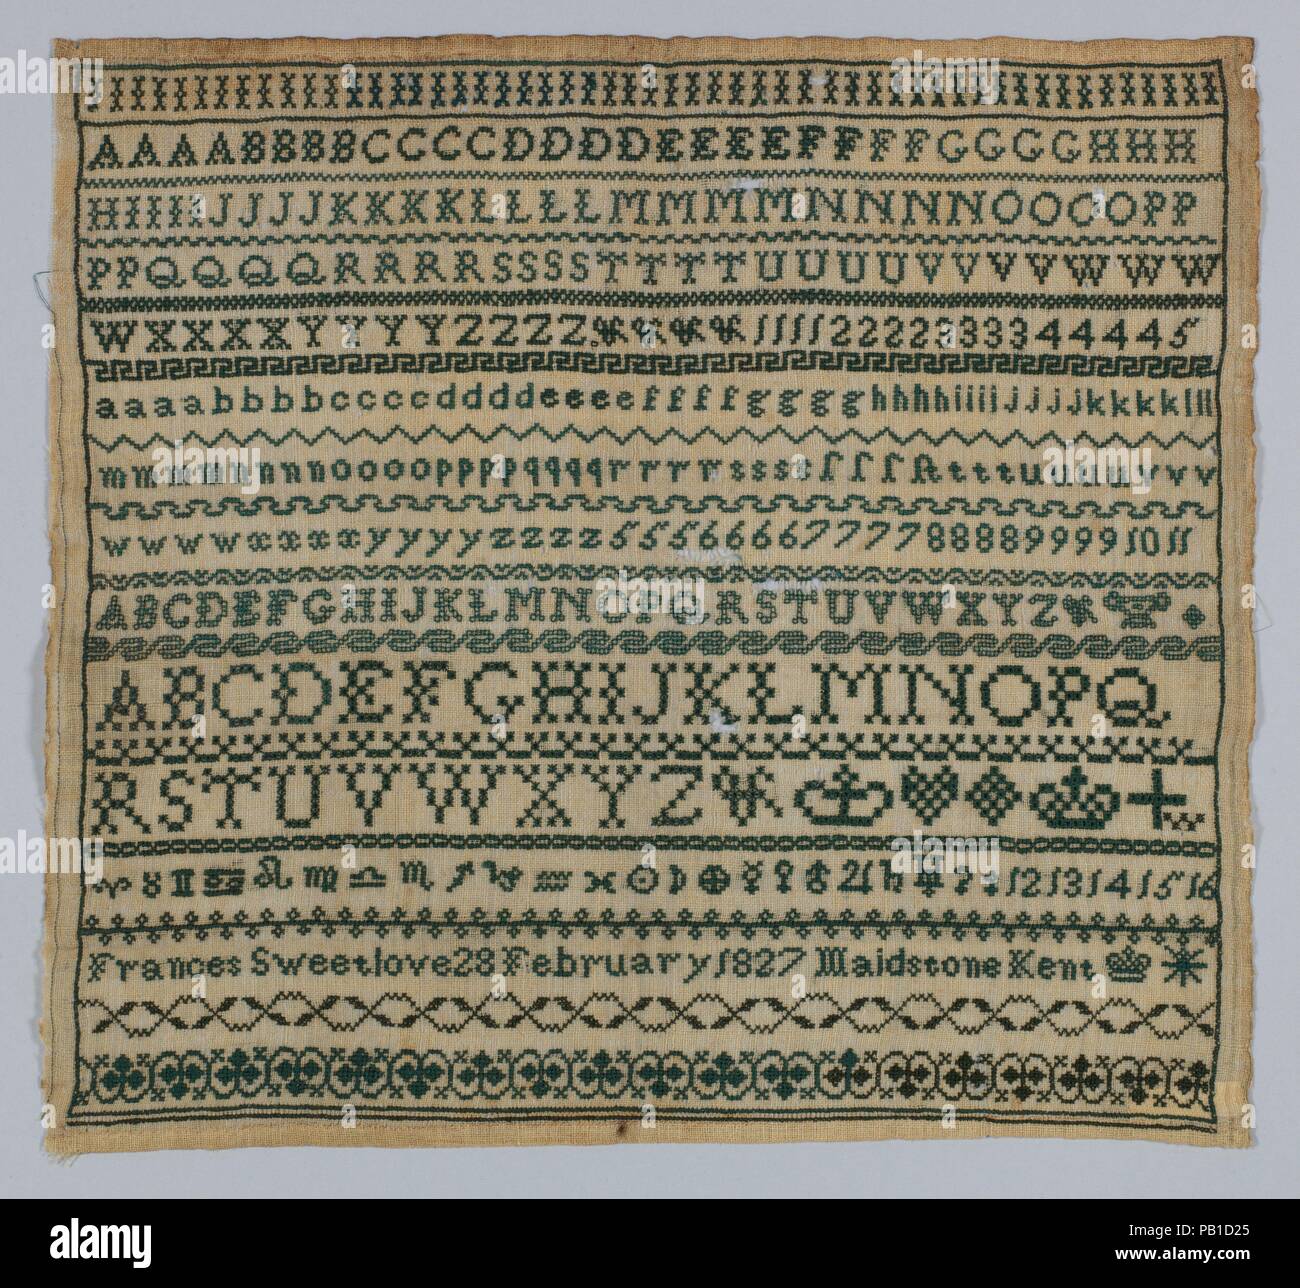 Échantillonneur. Culture : British. Dimensions : L. 13 x 12 pouces (33 W. x 30,5 cm). Date : 1827. Musée : Metropolitan Museum of Art, New York, USA. Banque D'Images